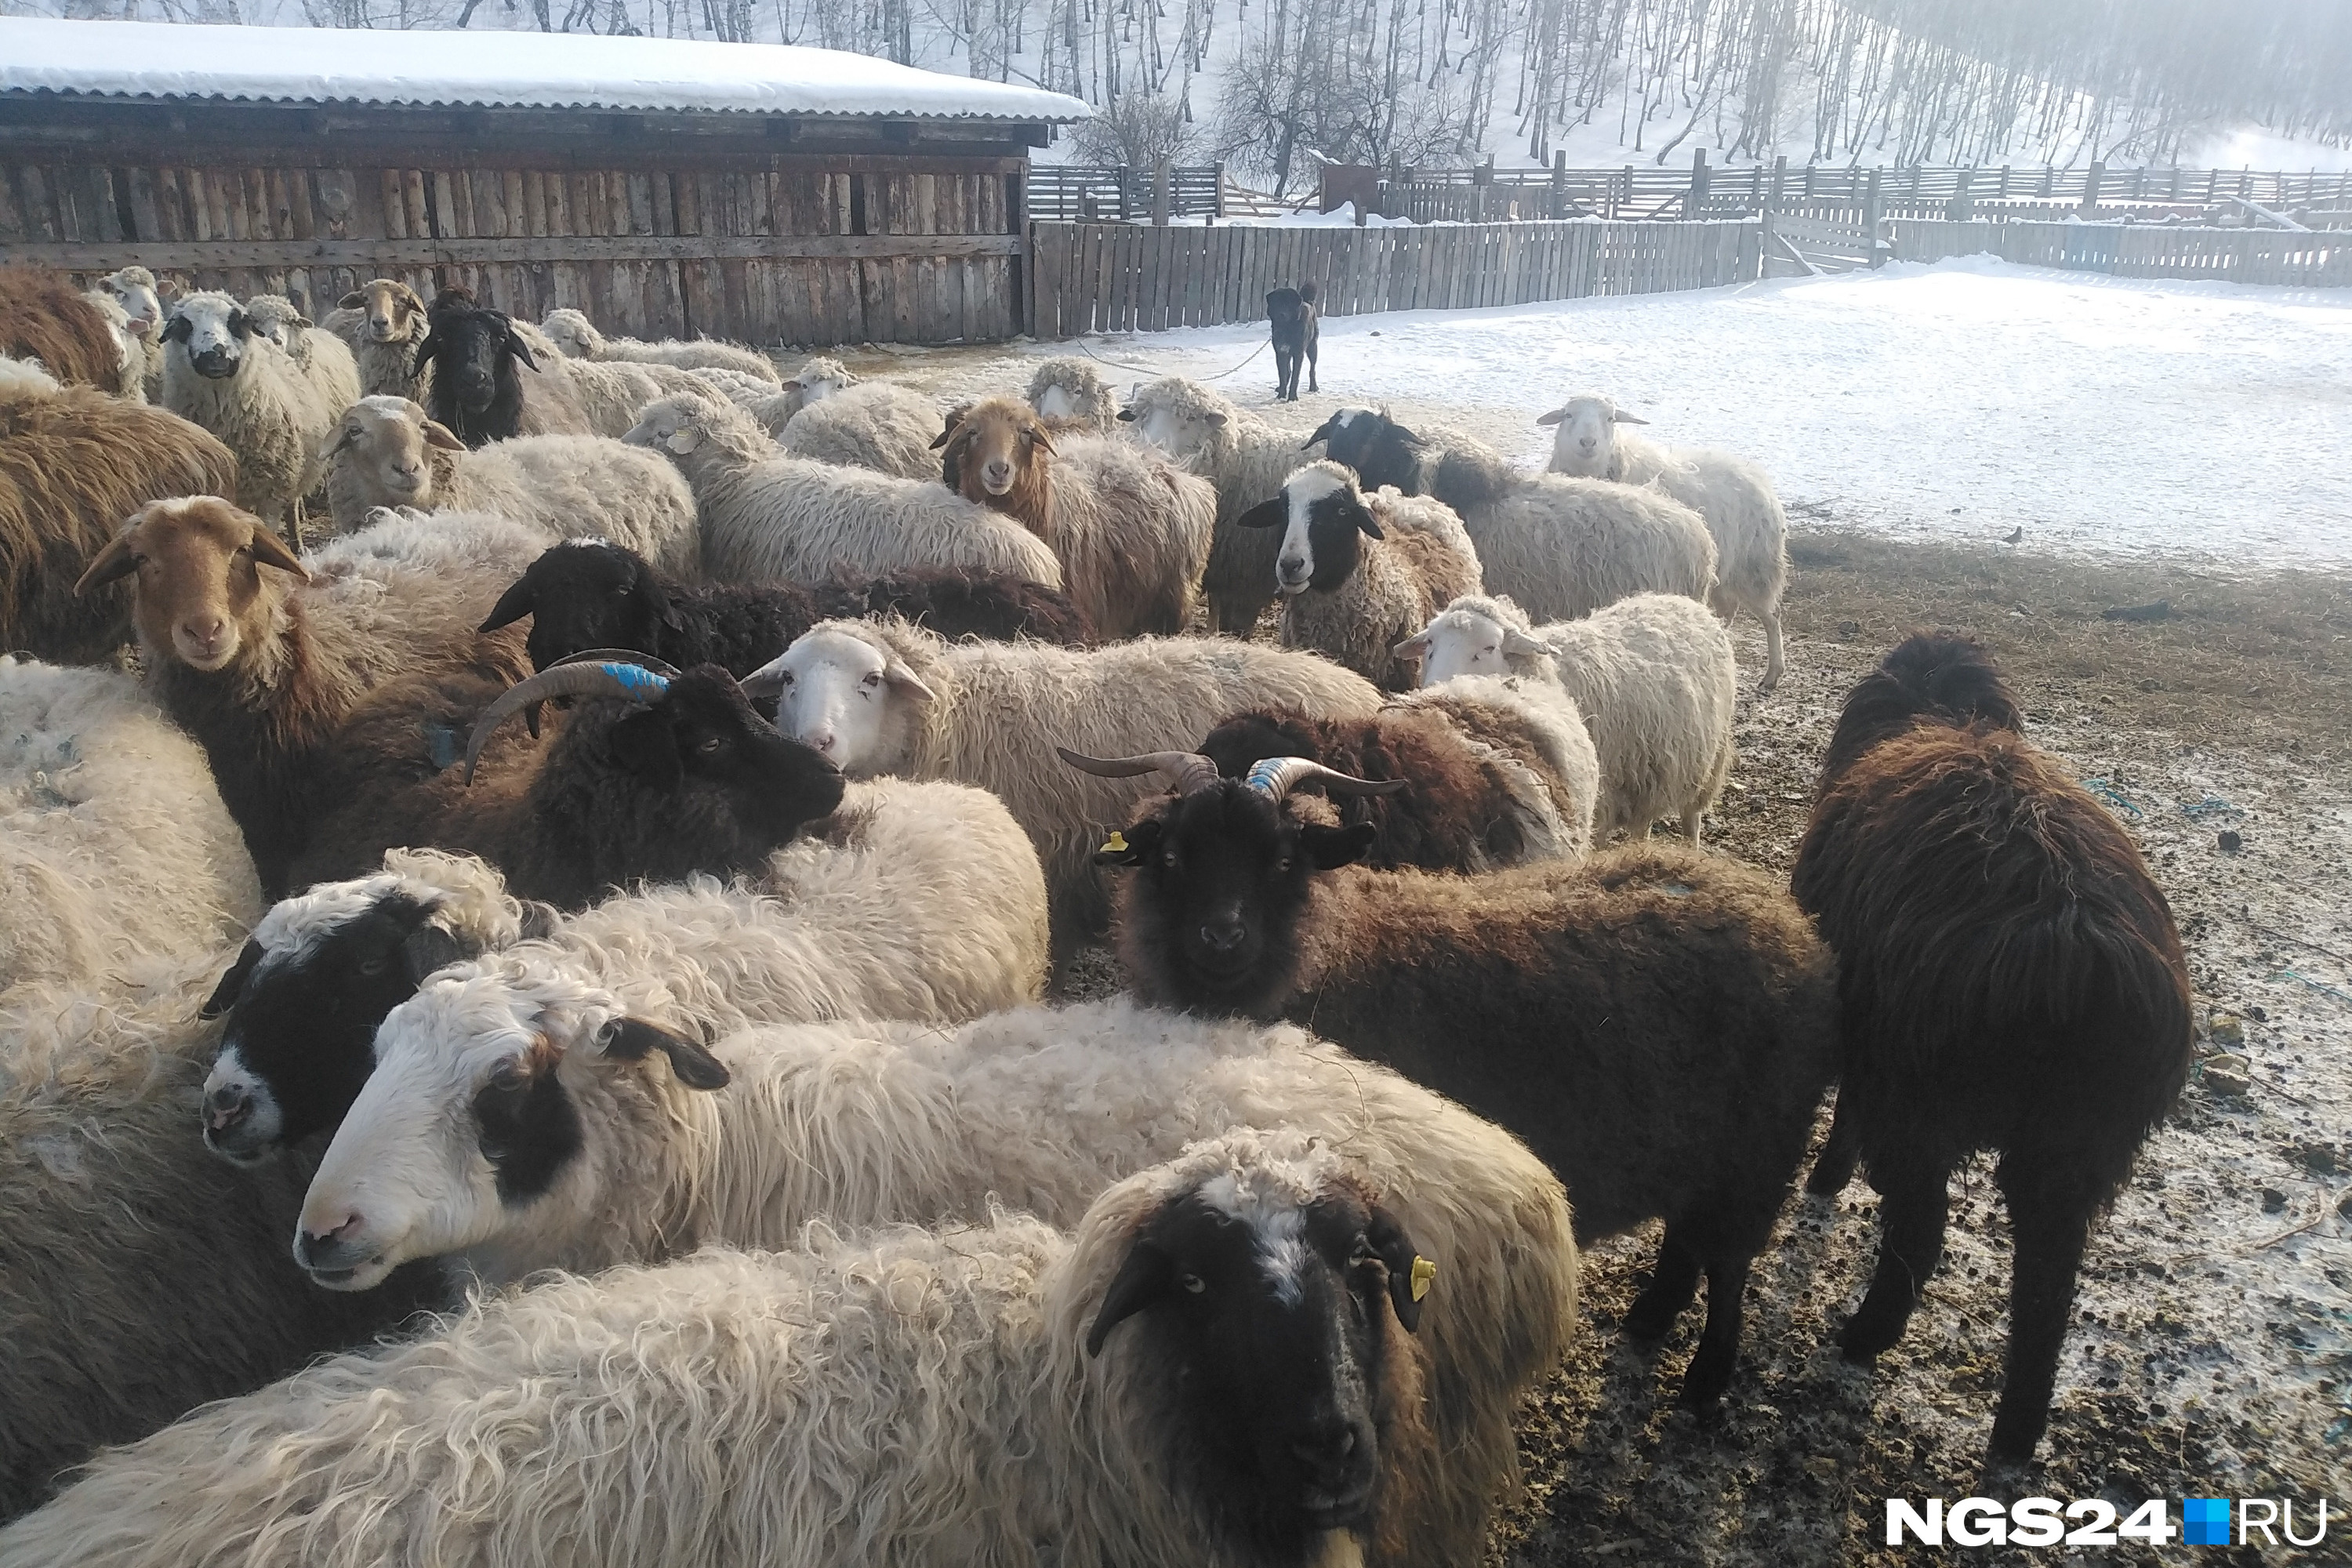 Овцы толпятся в той половине загона, куда еще не дошла снежно-ледяная жижа